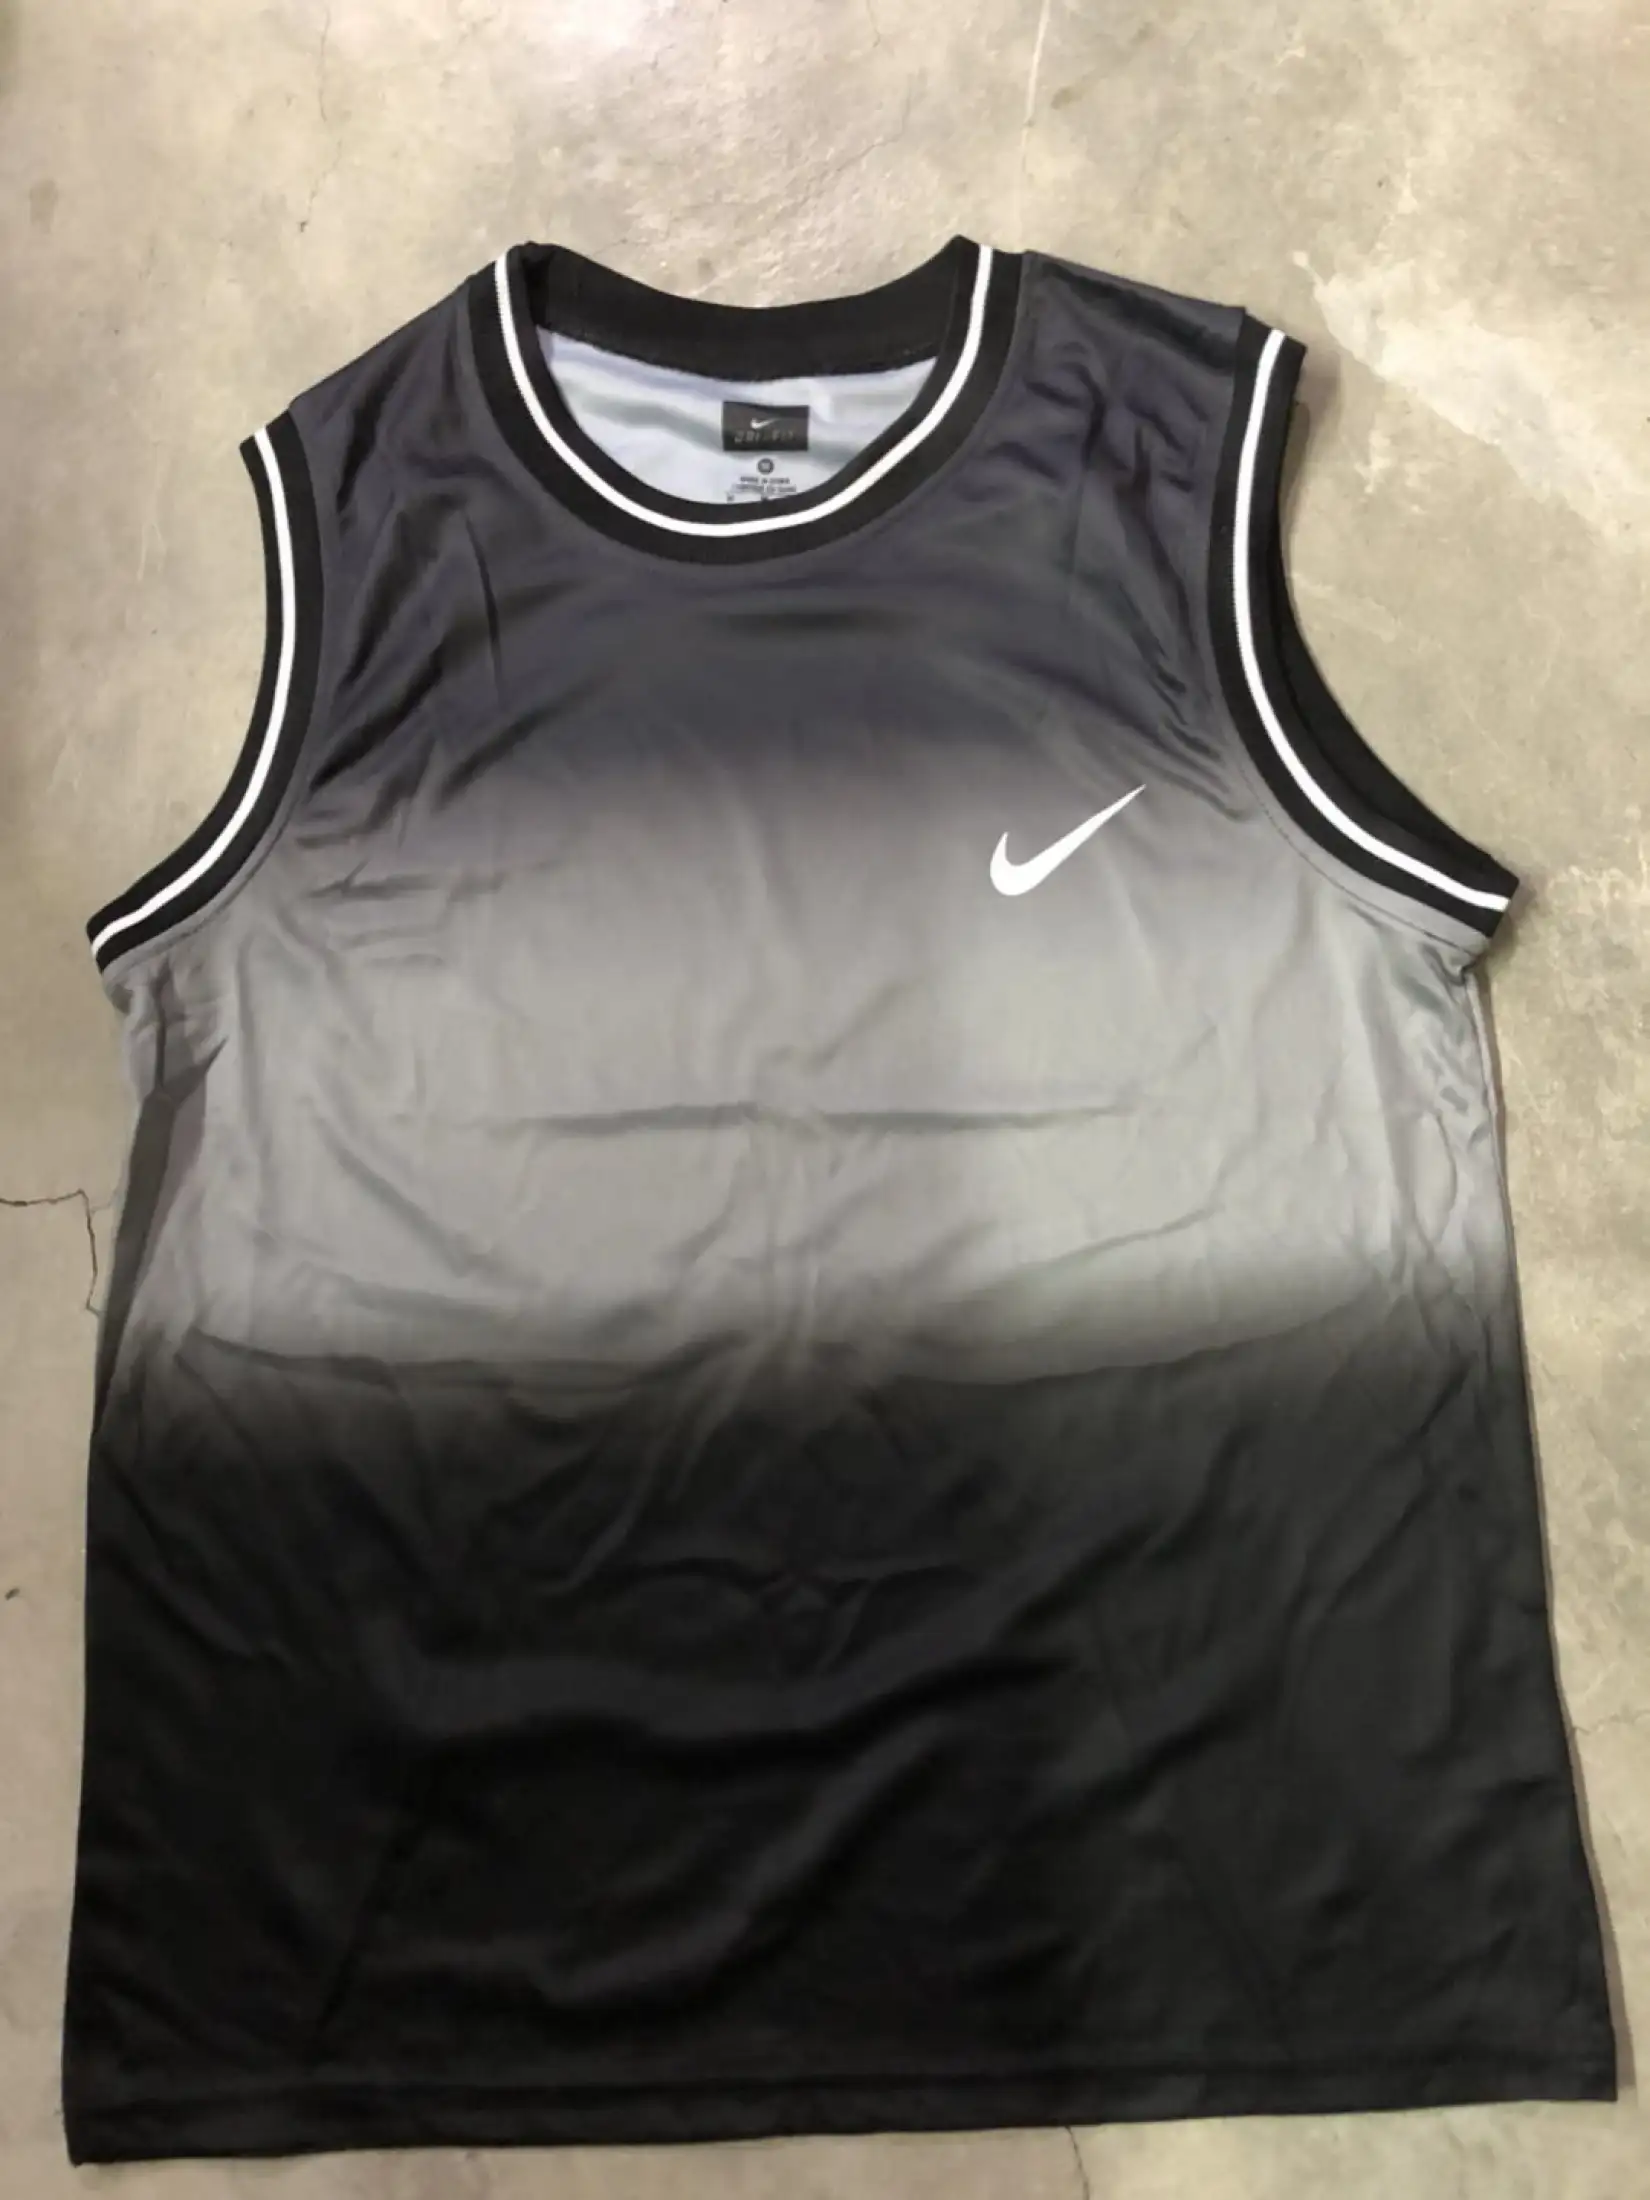 Jerseys Men S Clothing Sports Vest Tri Colors Dri Fit Vests Ombre Plant For Women Men Gift Lazada Ph